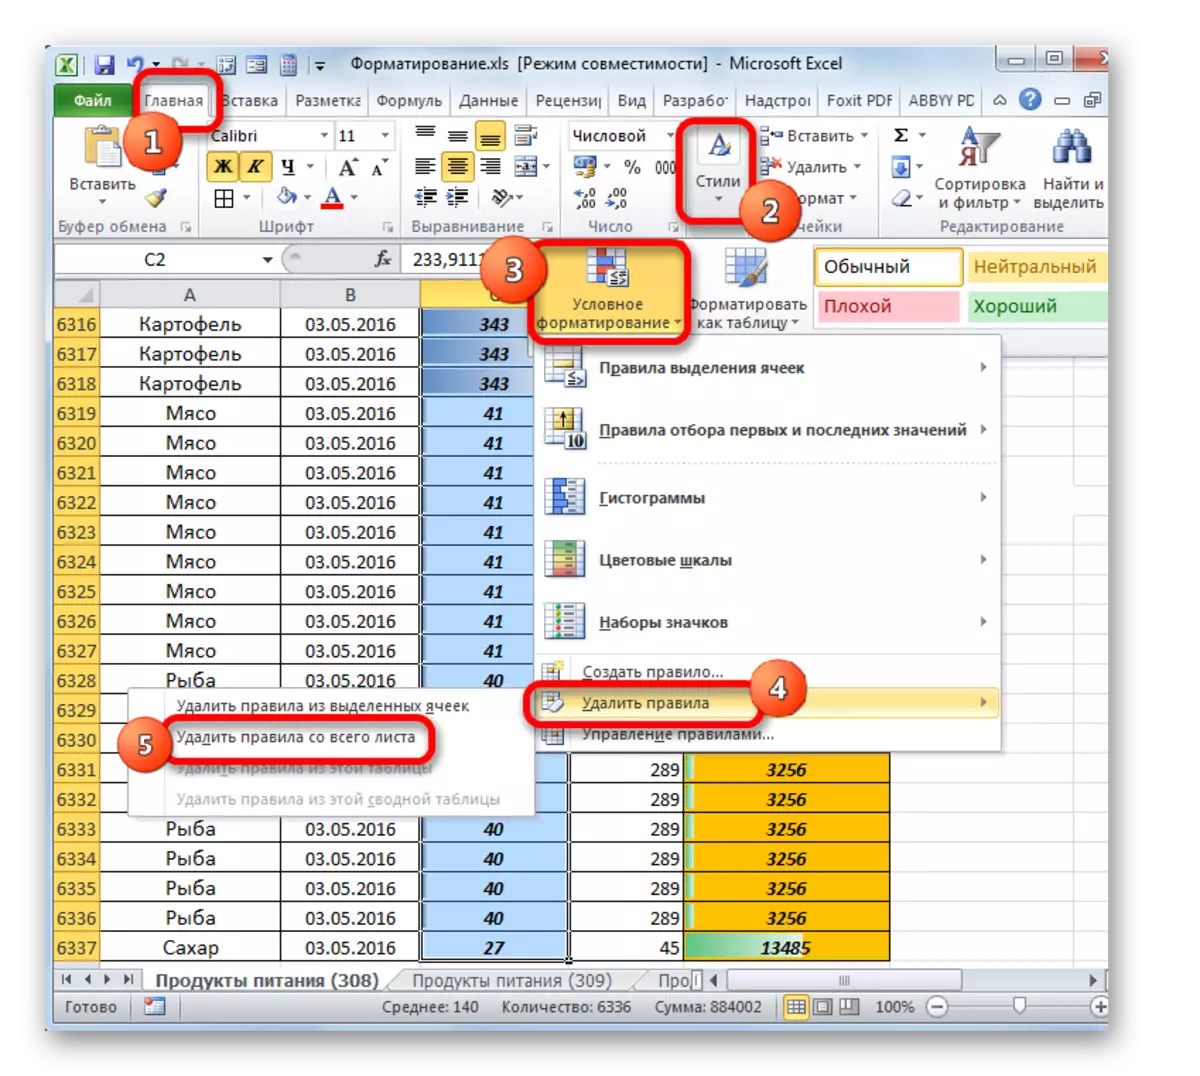 A feltételes formázási szabályok eltávolítása a Microsoft Excel teljes lapjáról